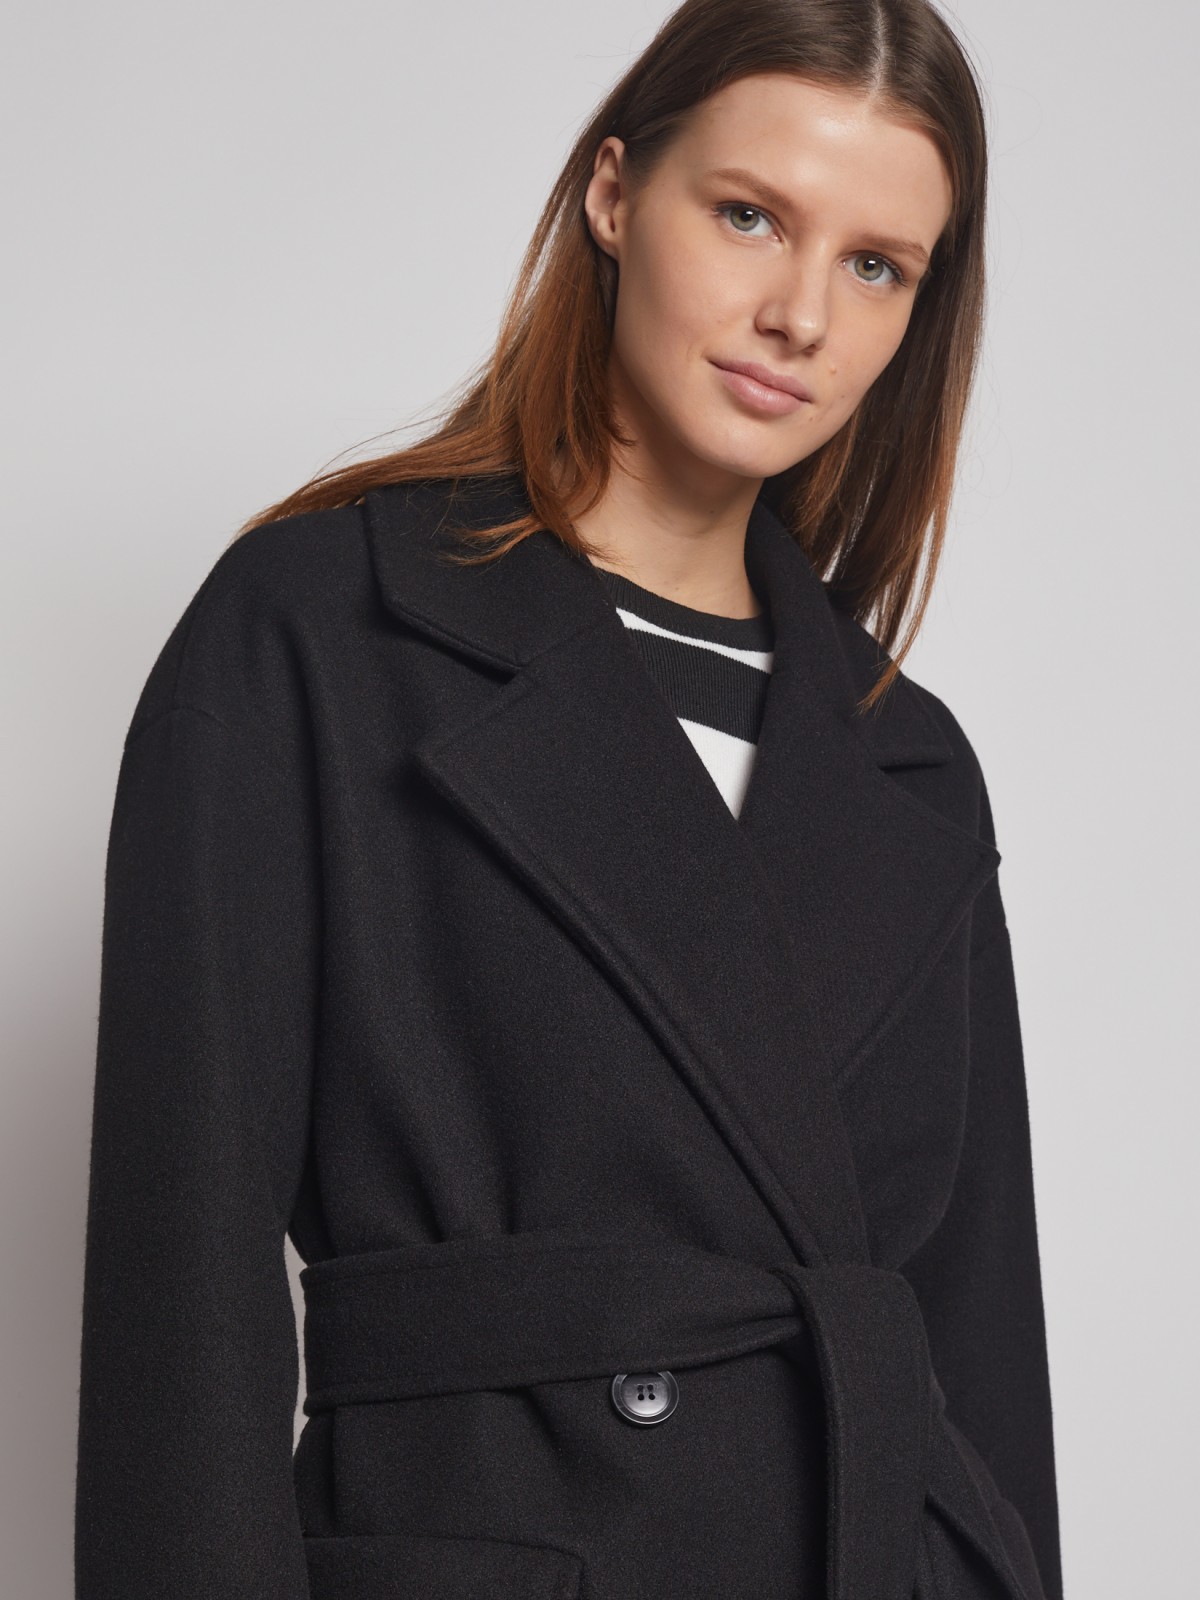 Двубортное пальто с поясом zolla 023125857054, цвет черный, размер XS - фото 3